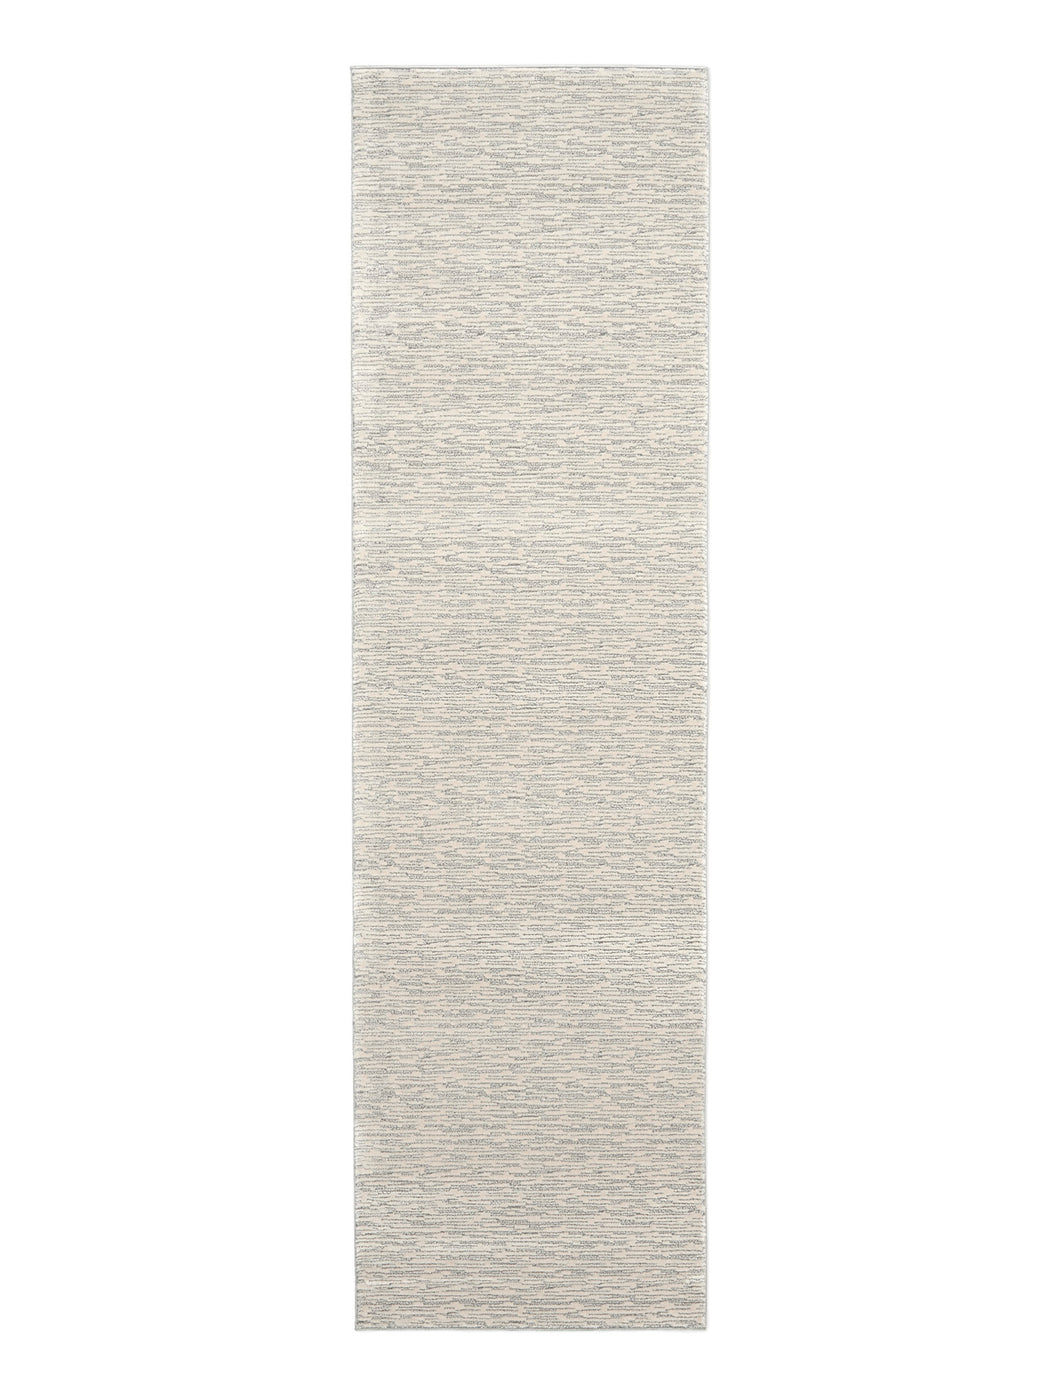 Calvin Klein Jackson CK781 Ivory and Grey 8' Runner Striated Hallway Rug CK781 Beige/Grey